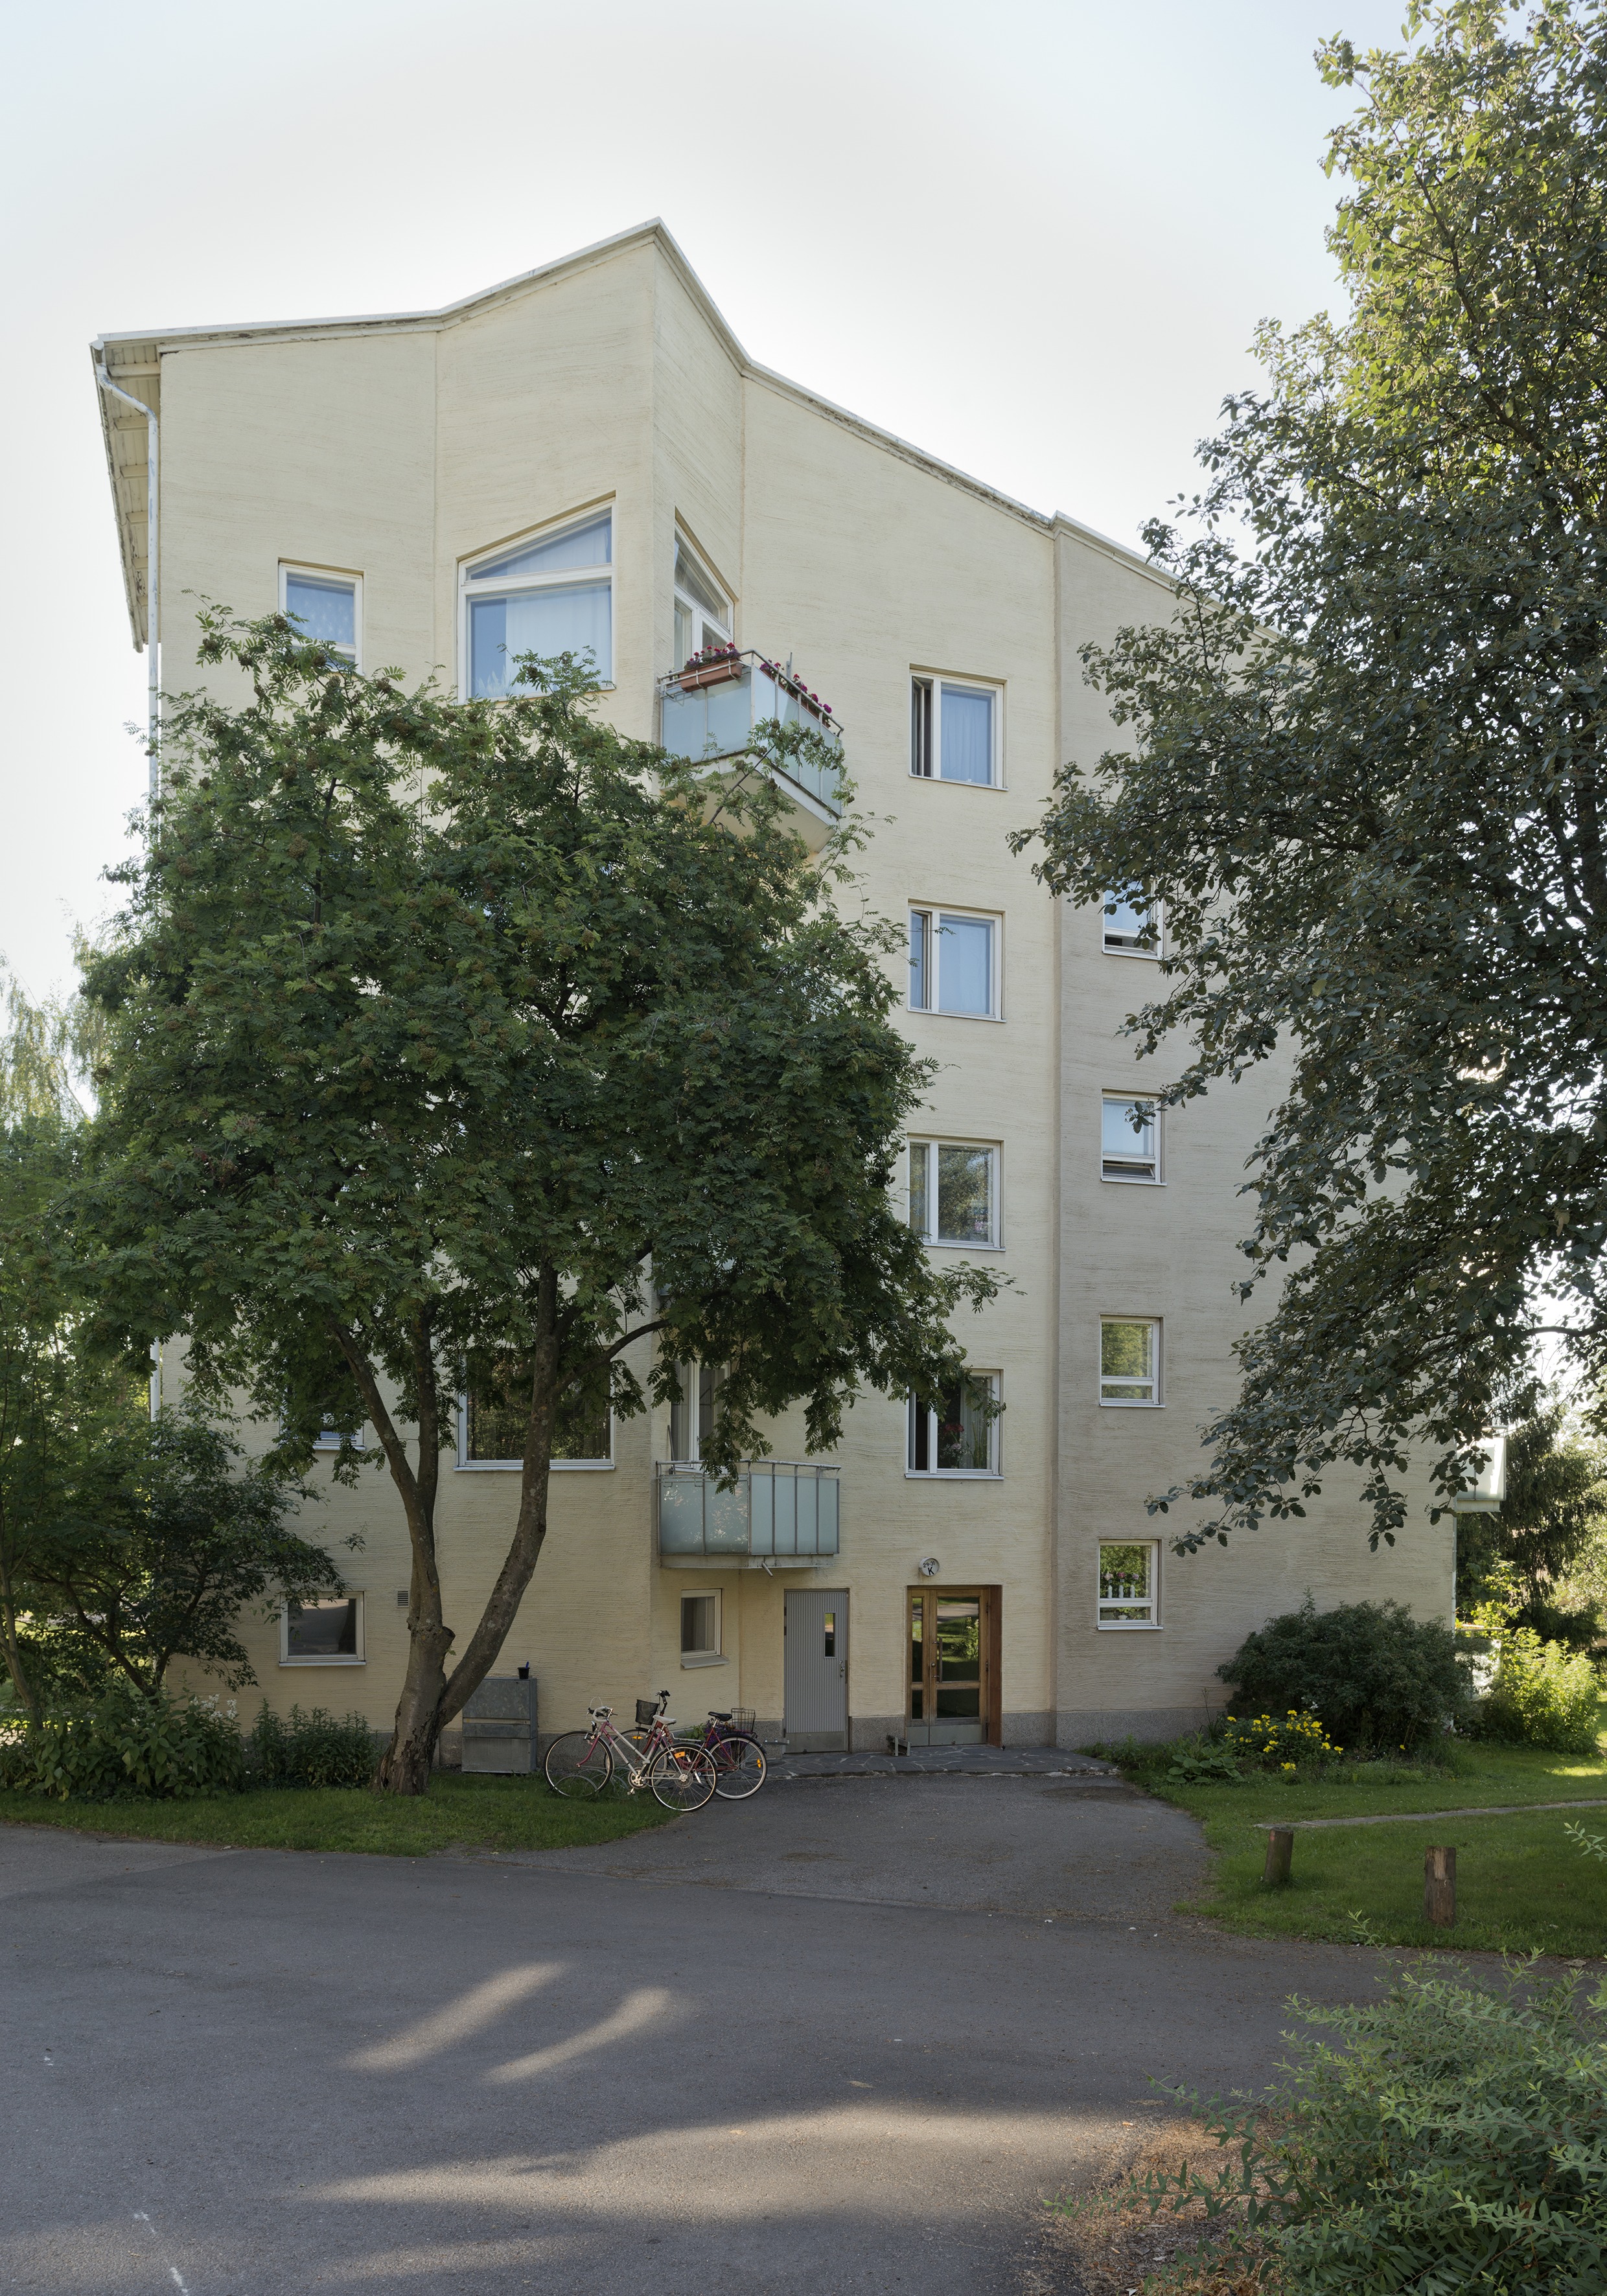 1950 -luvun lähiöarkkitehtuuria Maunulan Sahanmäessä, Rajametsäntie 29 - 31. Hilding Ekelundin suunnittelema Sahanmäki on maisemallisesti ja rakennustaiteellisesti merkittävä kokonaisuus.